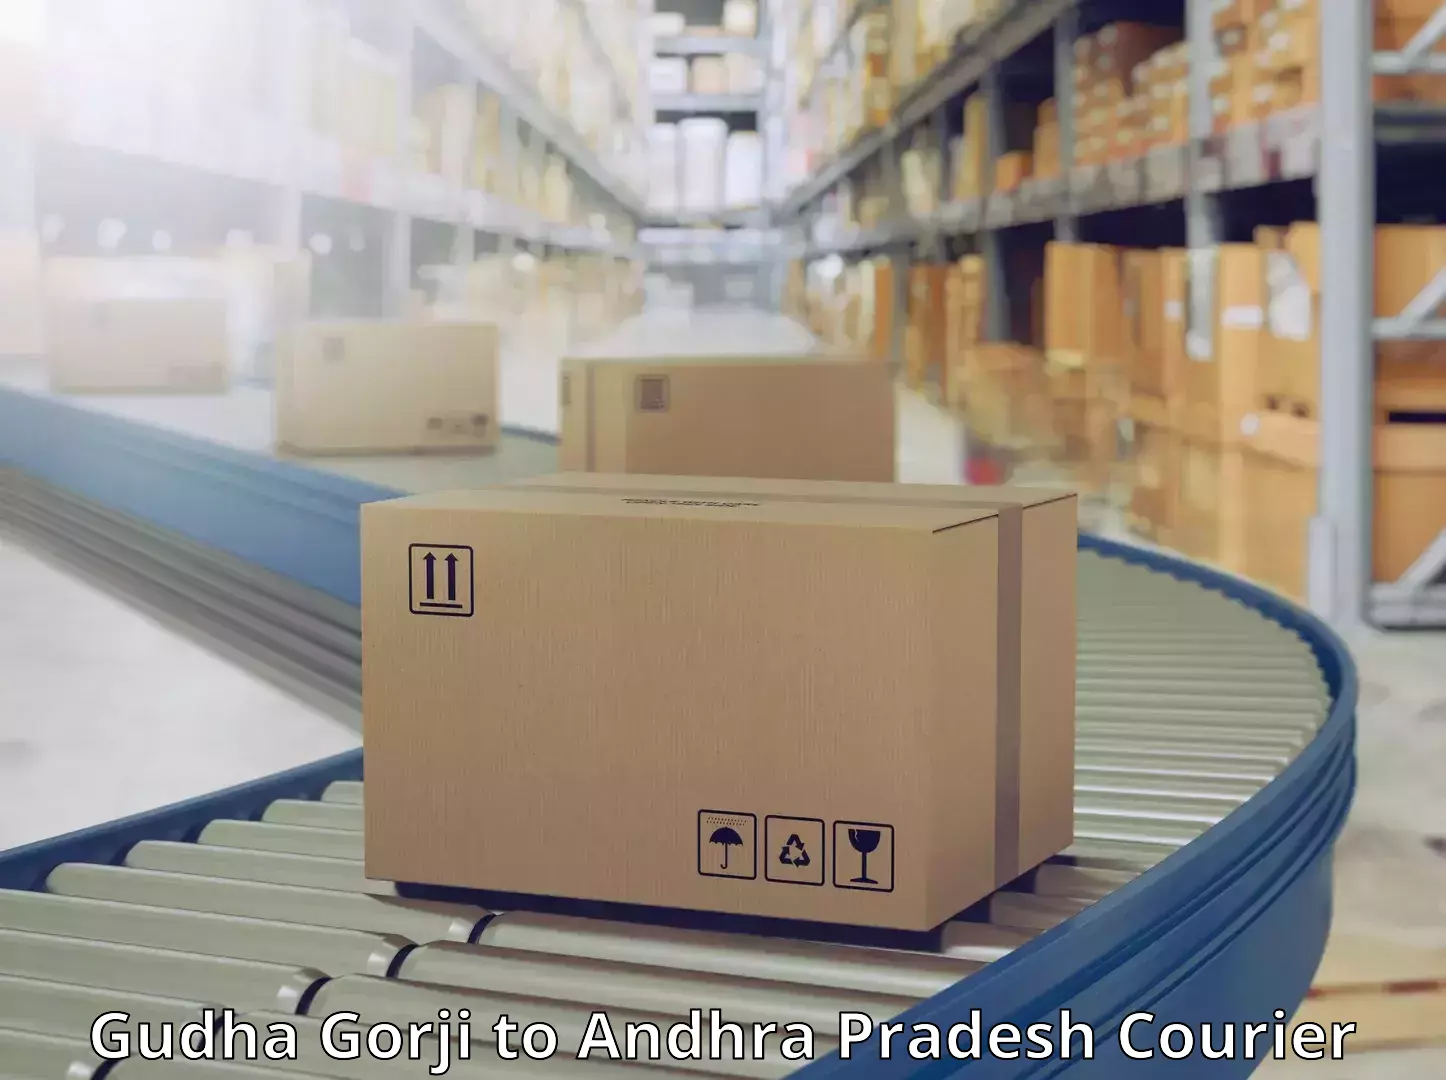 Customer-centric shipping in Gudha Gorji to Mulakalacheruvu